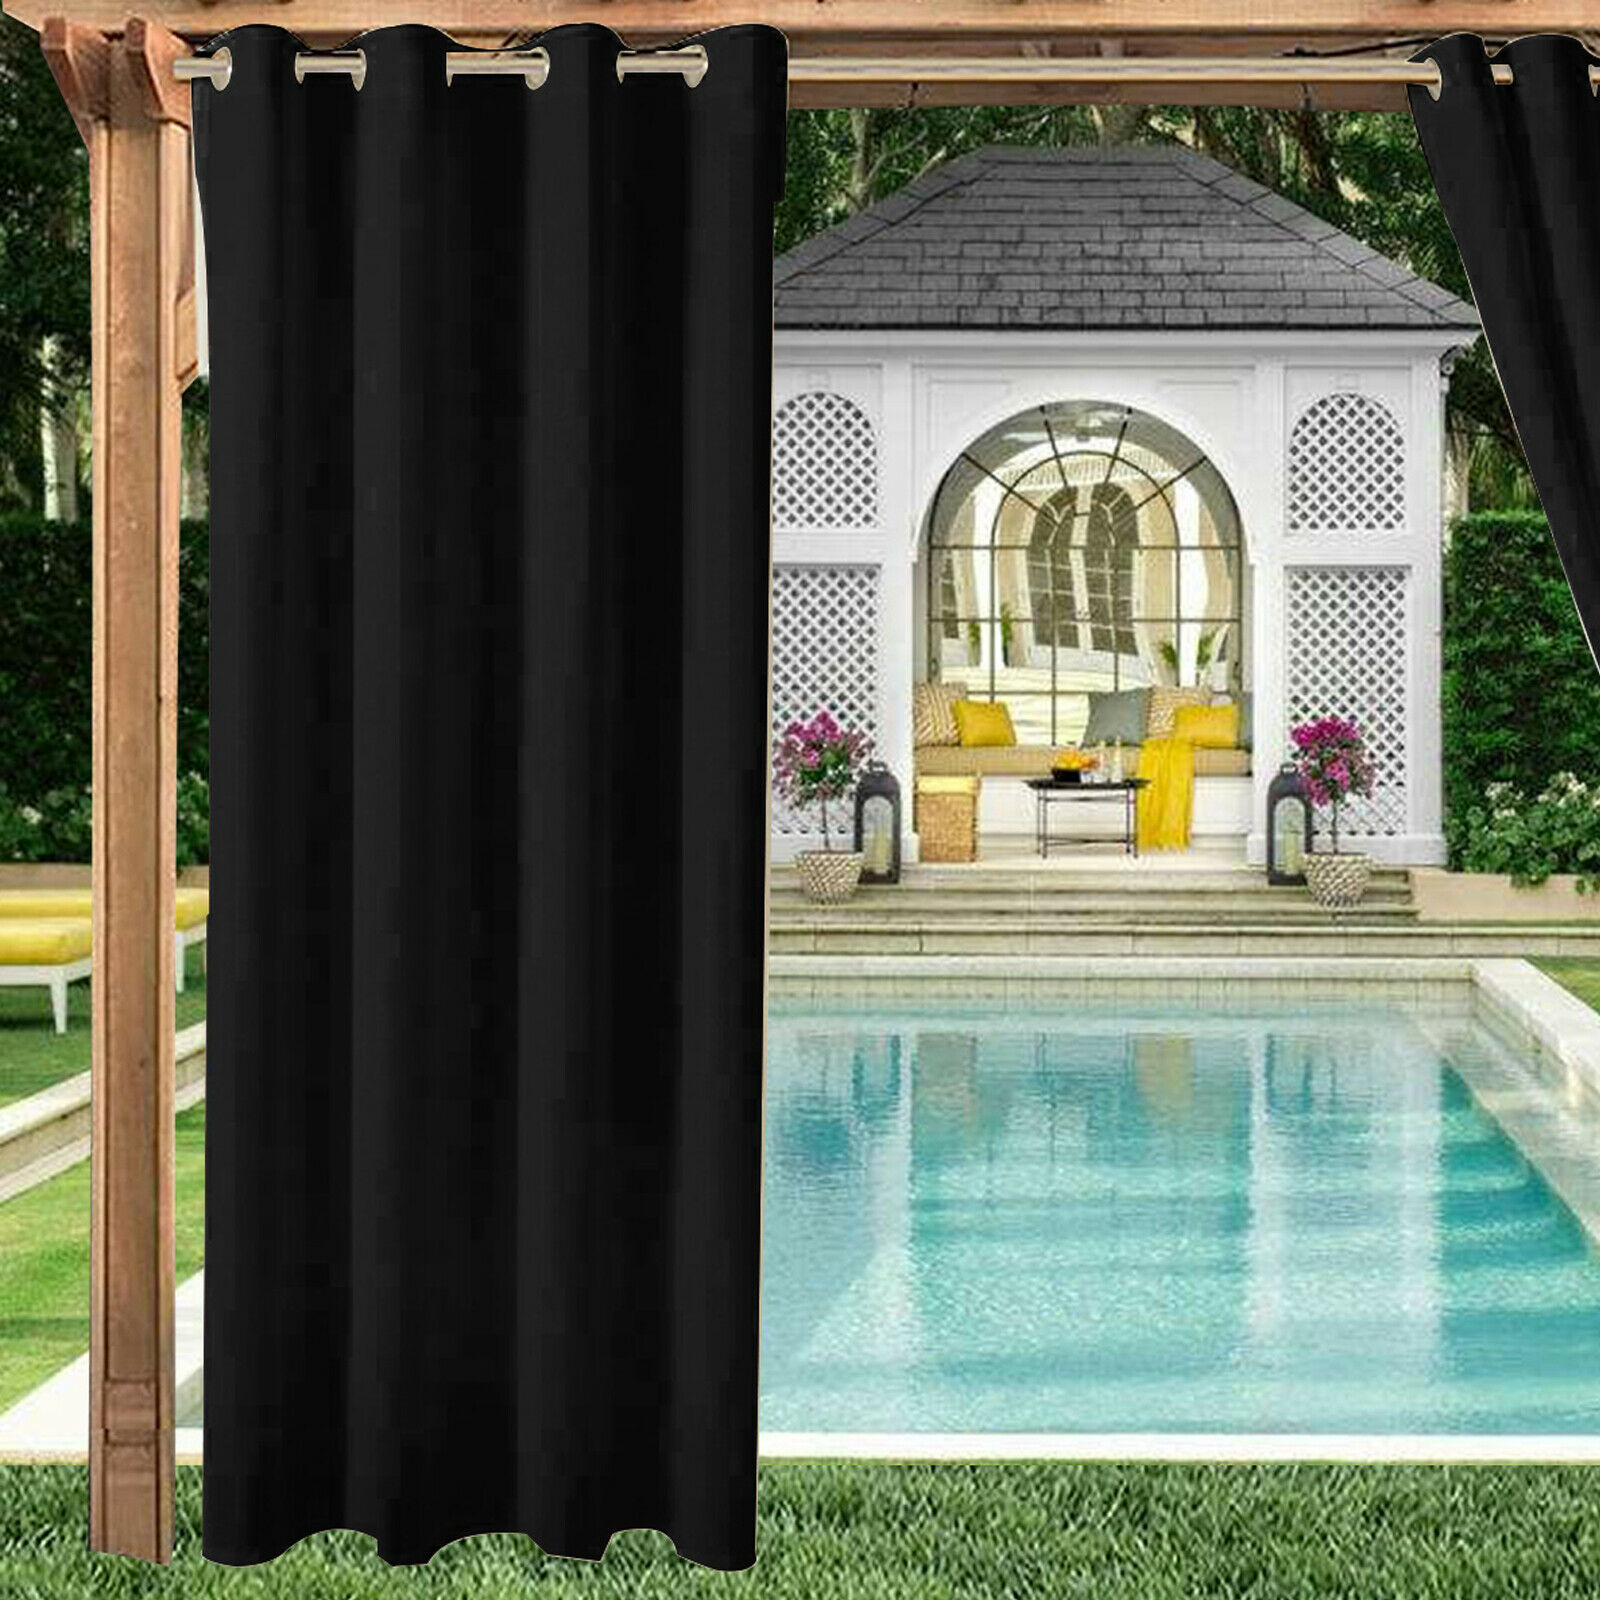 Waterproof Outdoor Curtains Panel Pergola Patio Balcony Cabana Garden Drapes US 